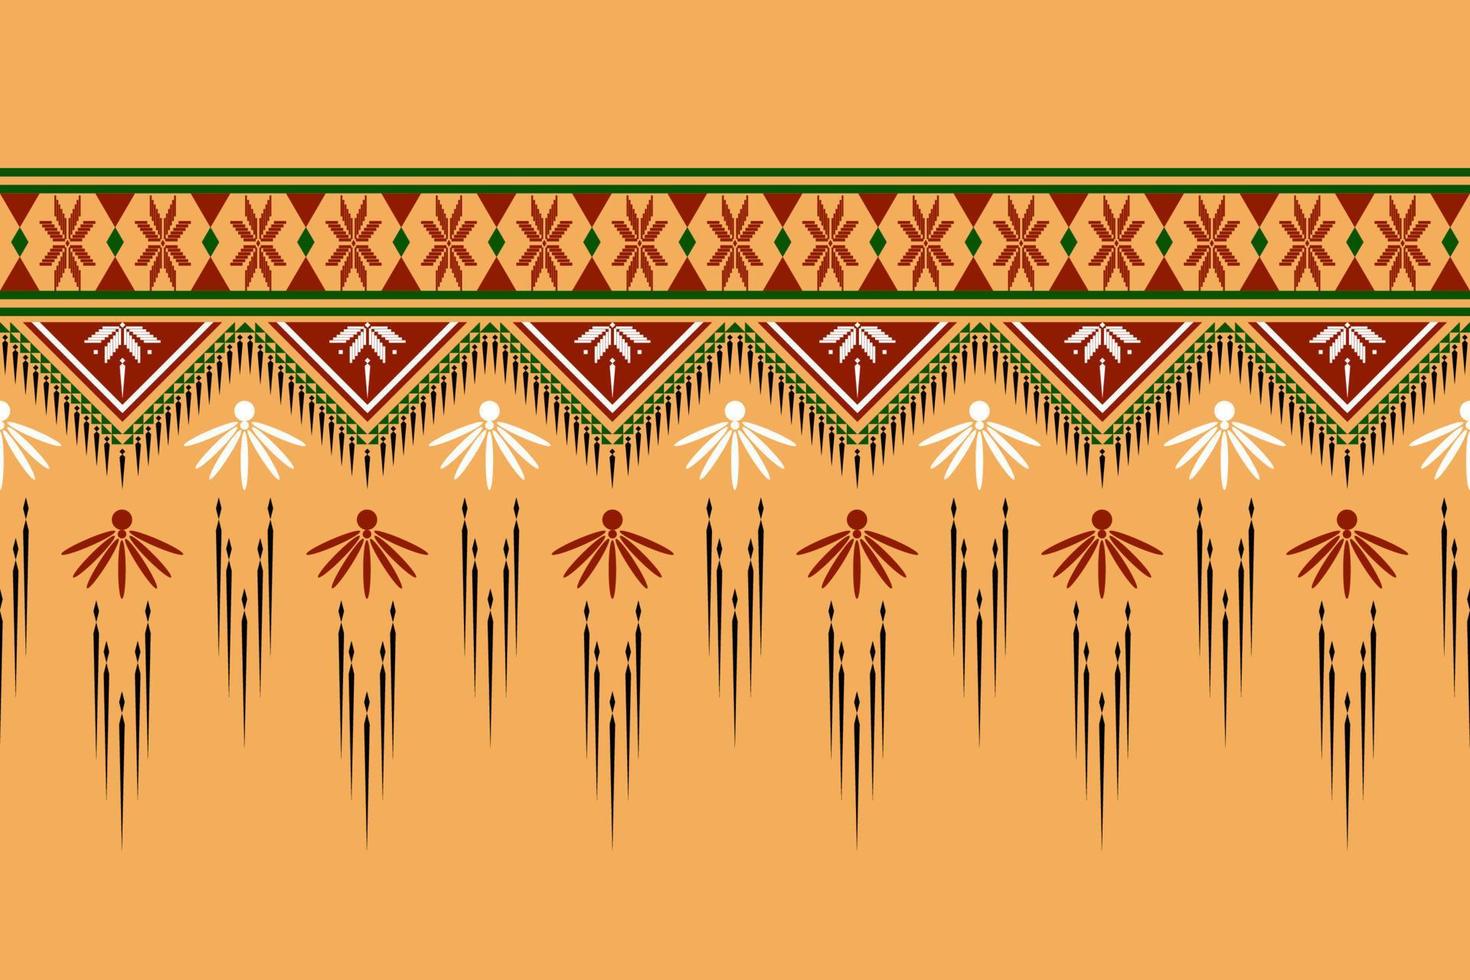 Diseño tradicional geométrico étnico oriental sin costuras para fondo, alfombra, papel pintado, ropa, envoltura, batik, tela, vector, ilustración, estilo bordado. vector